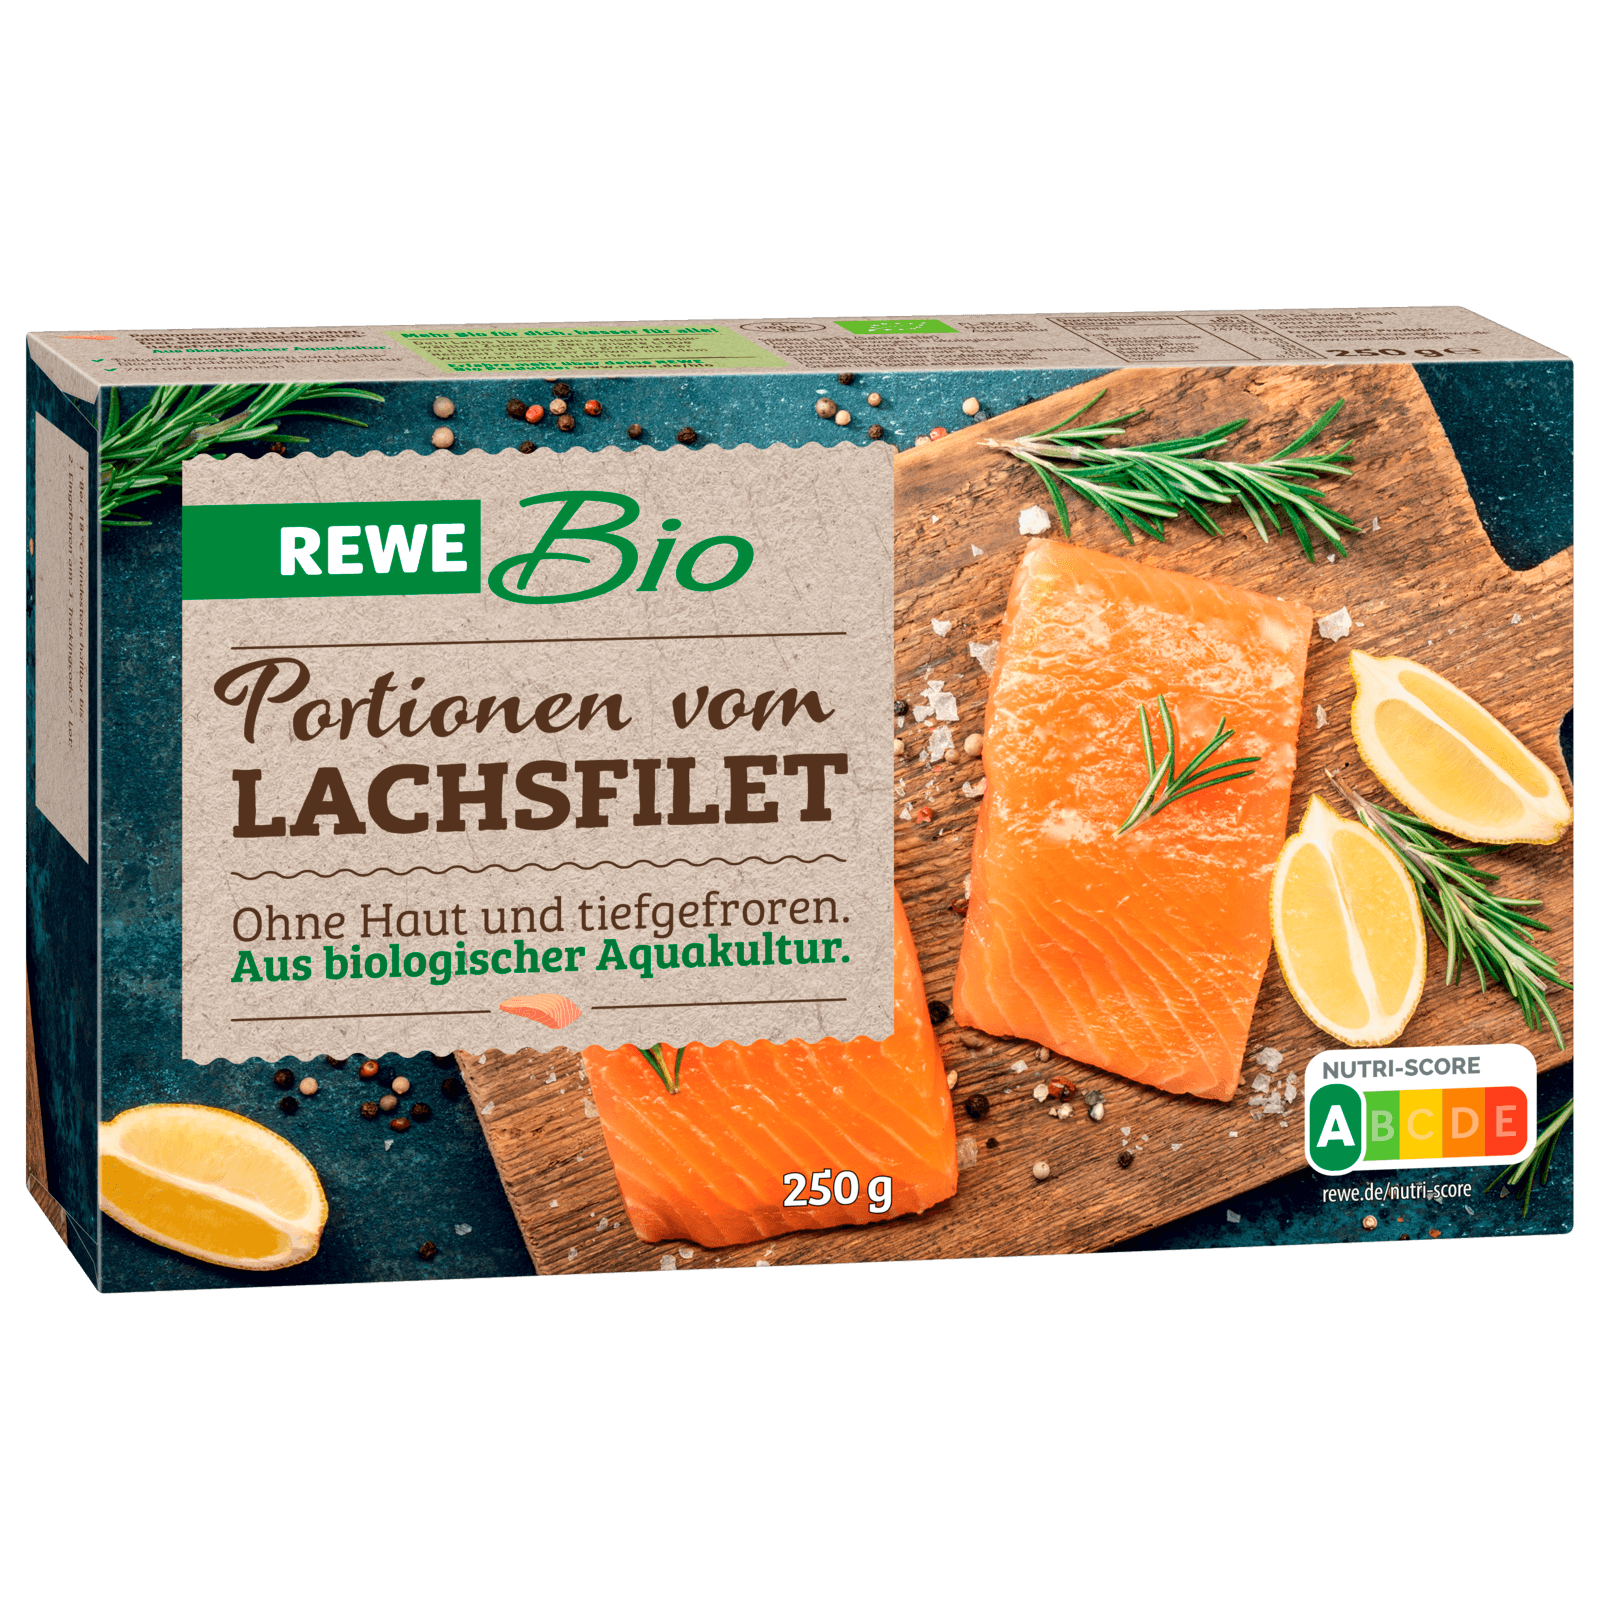 REWE Bio Portionen vom Lachsfilet 250g